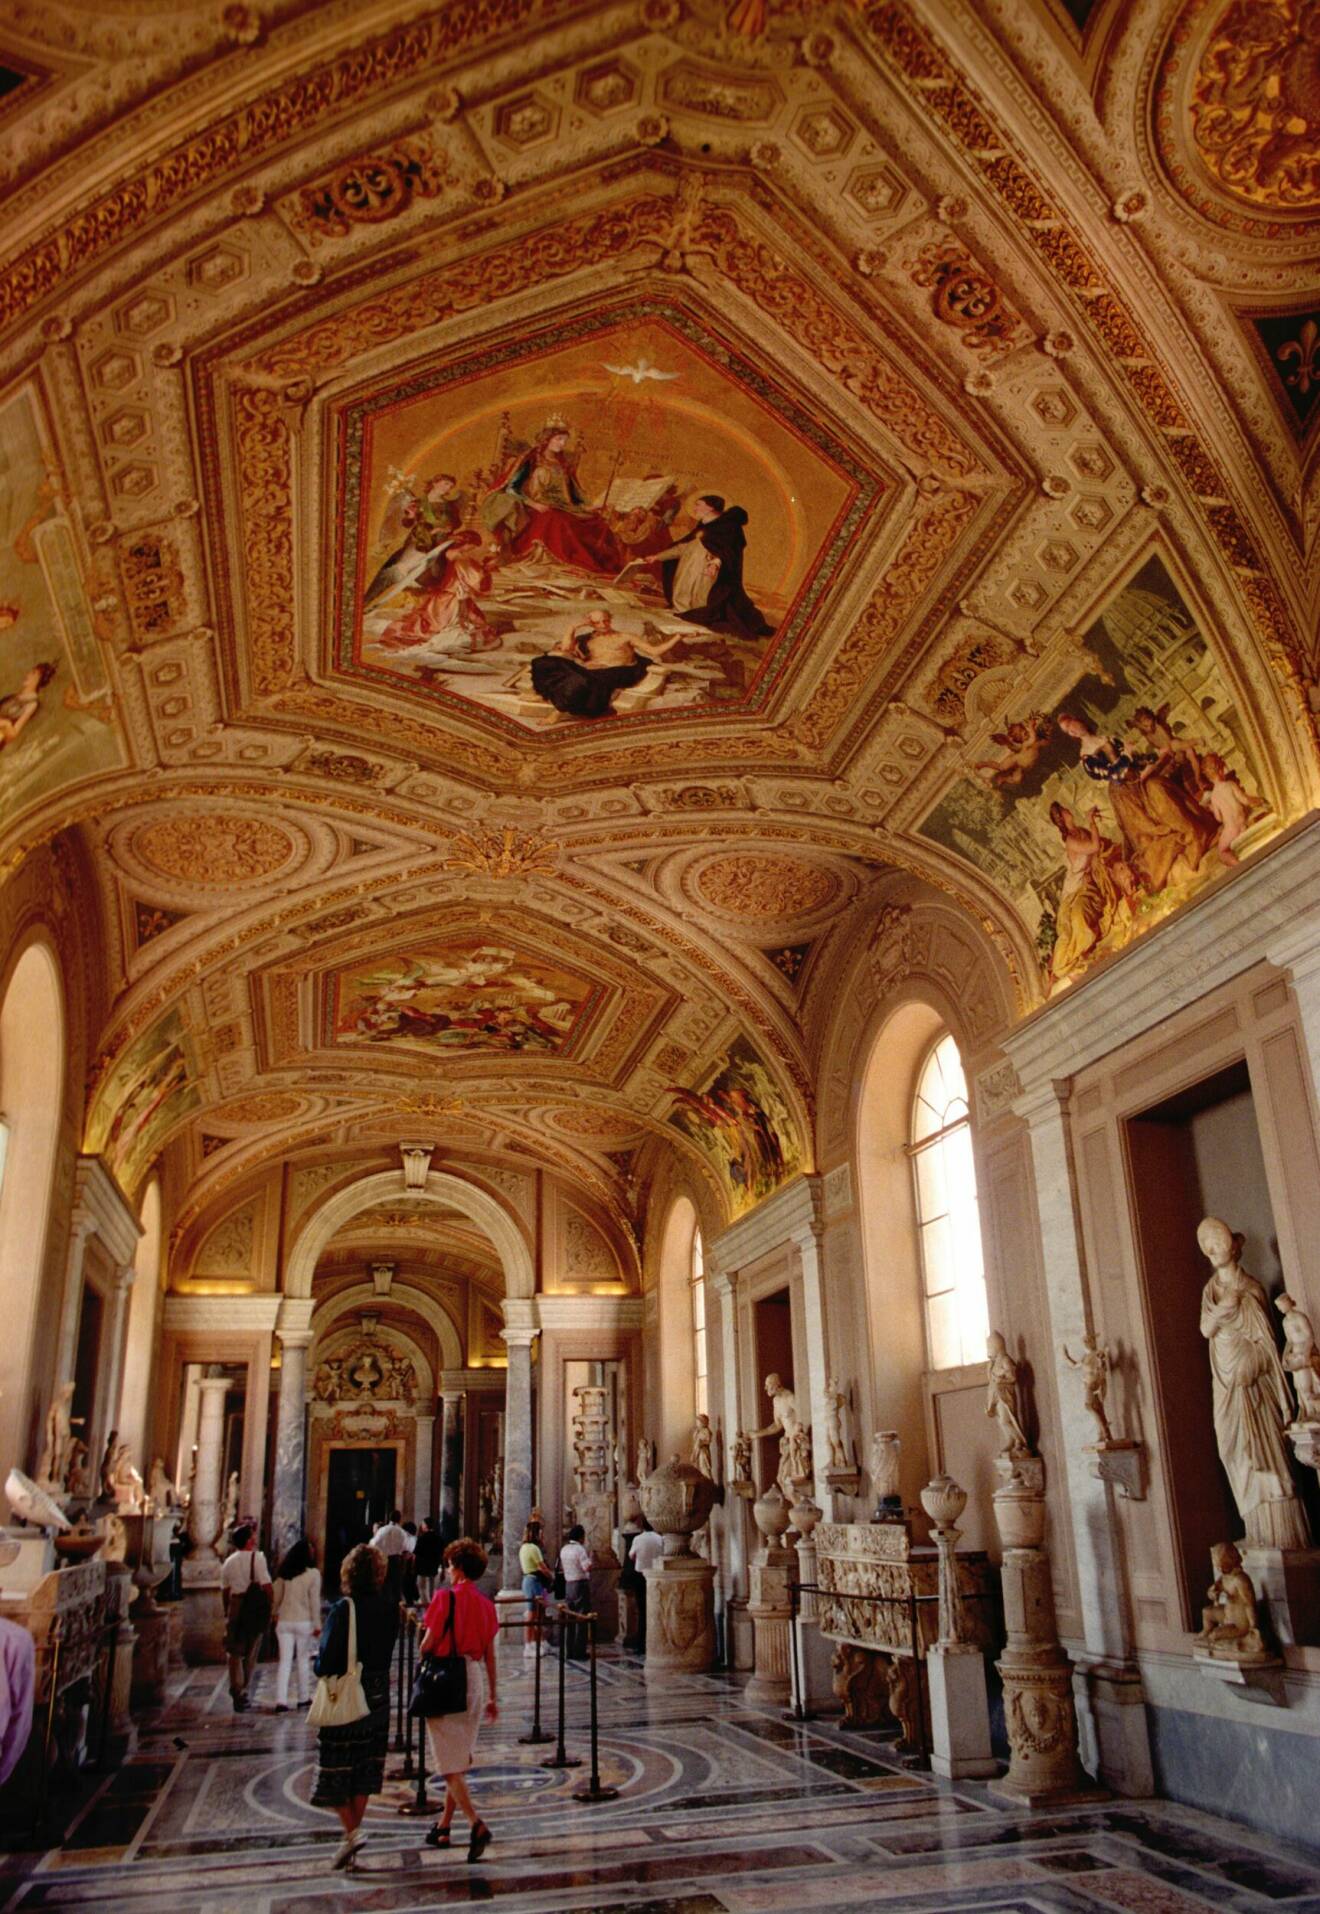 målningar i sixtinska kapellet att se beläget i vatikanen i Italien